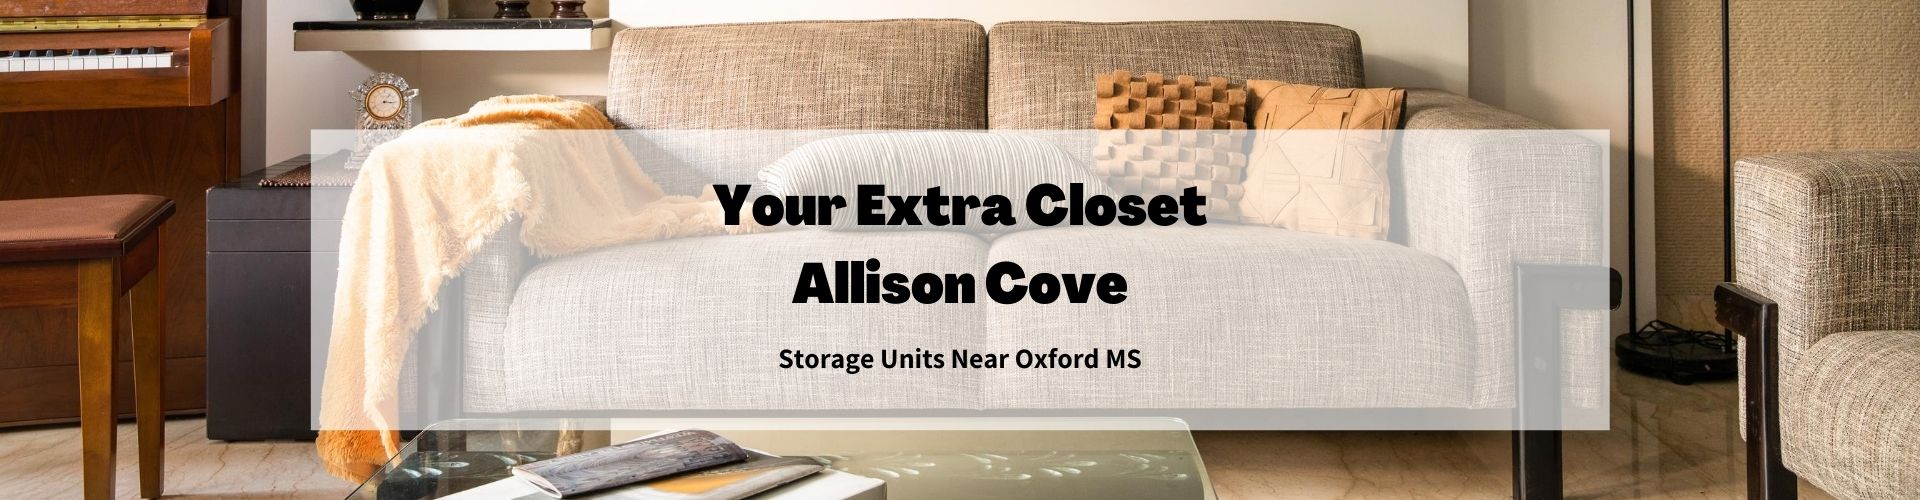 Oxford MS-Allison Cove